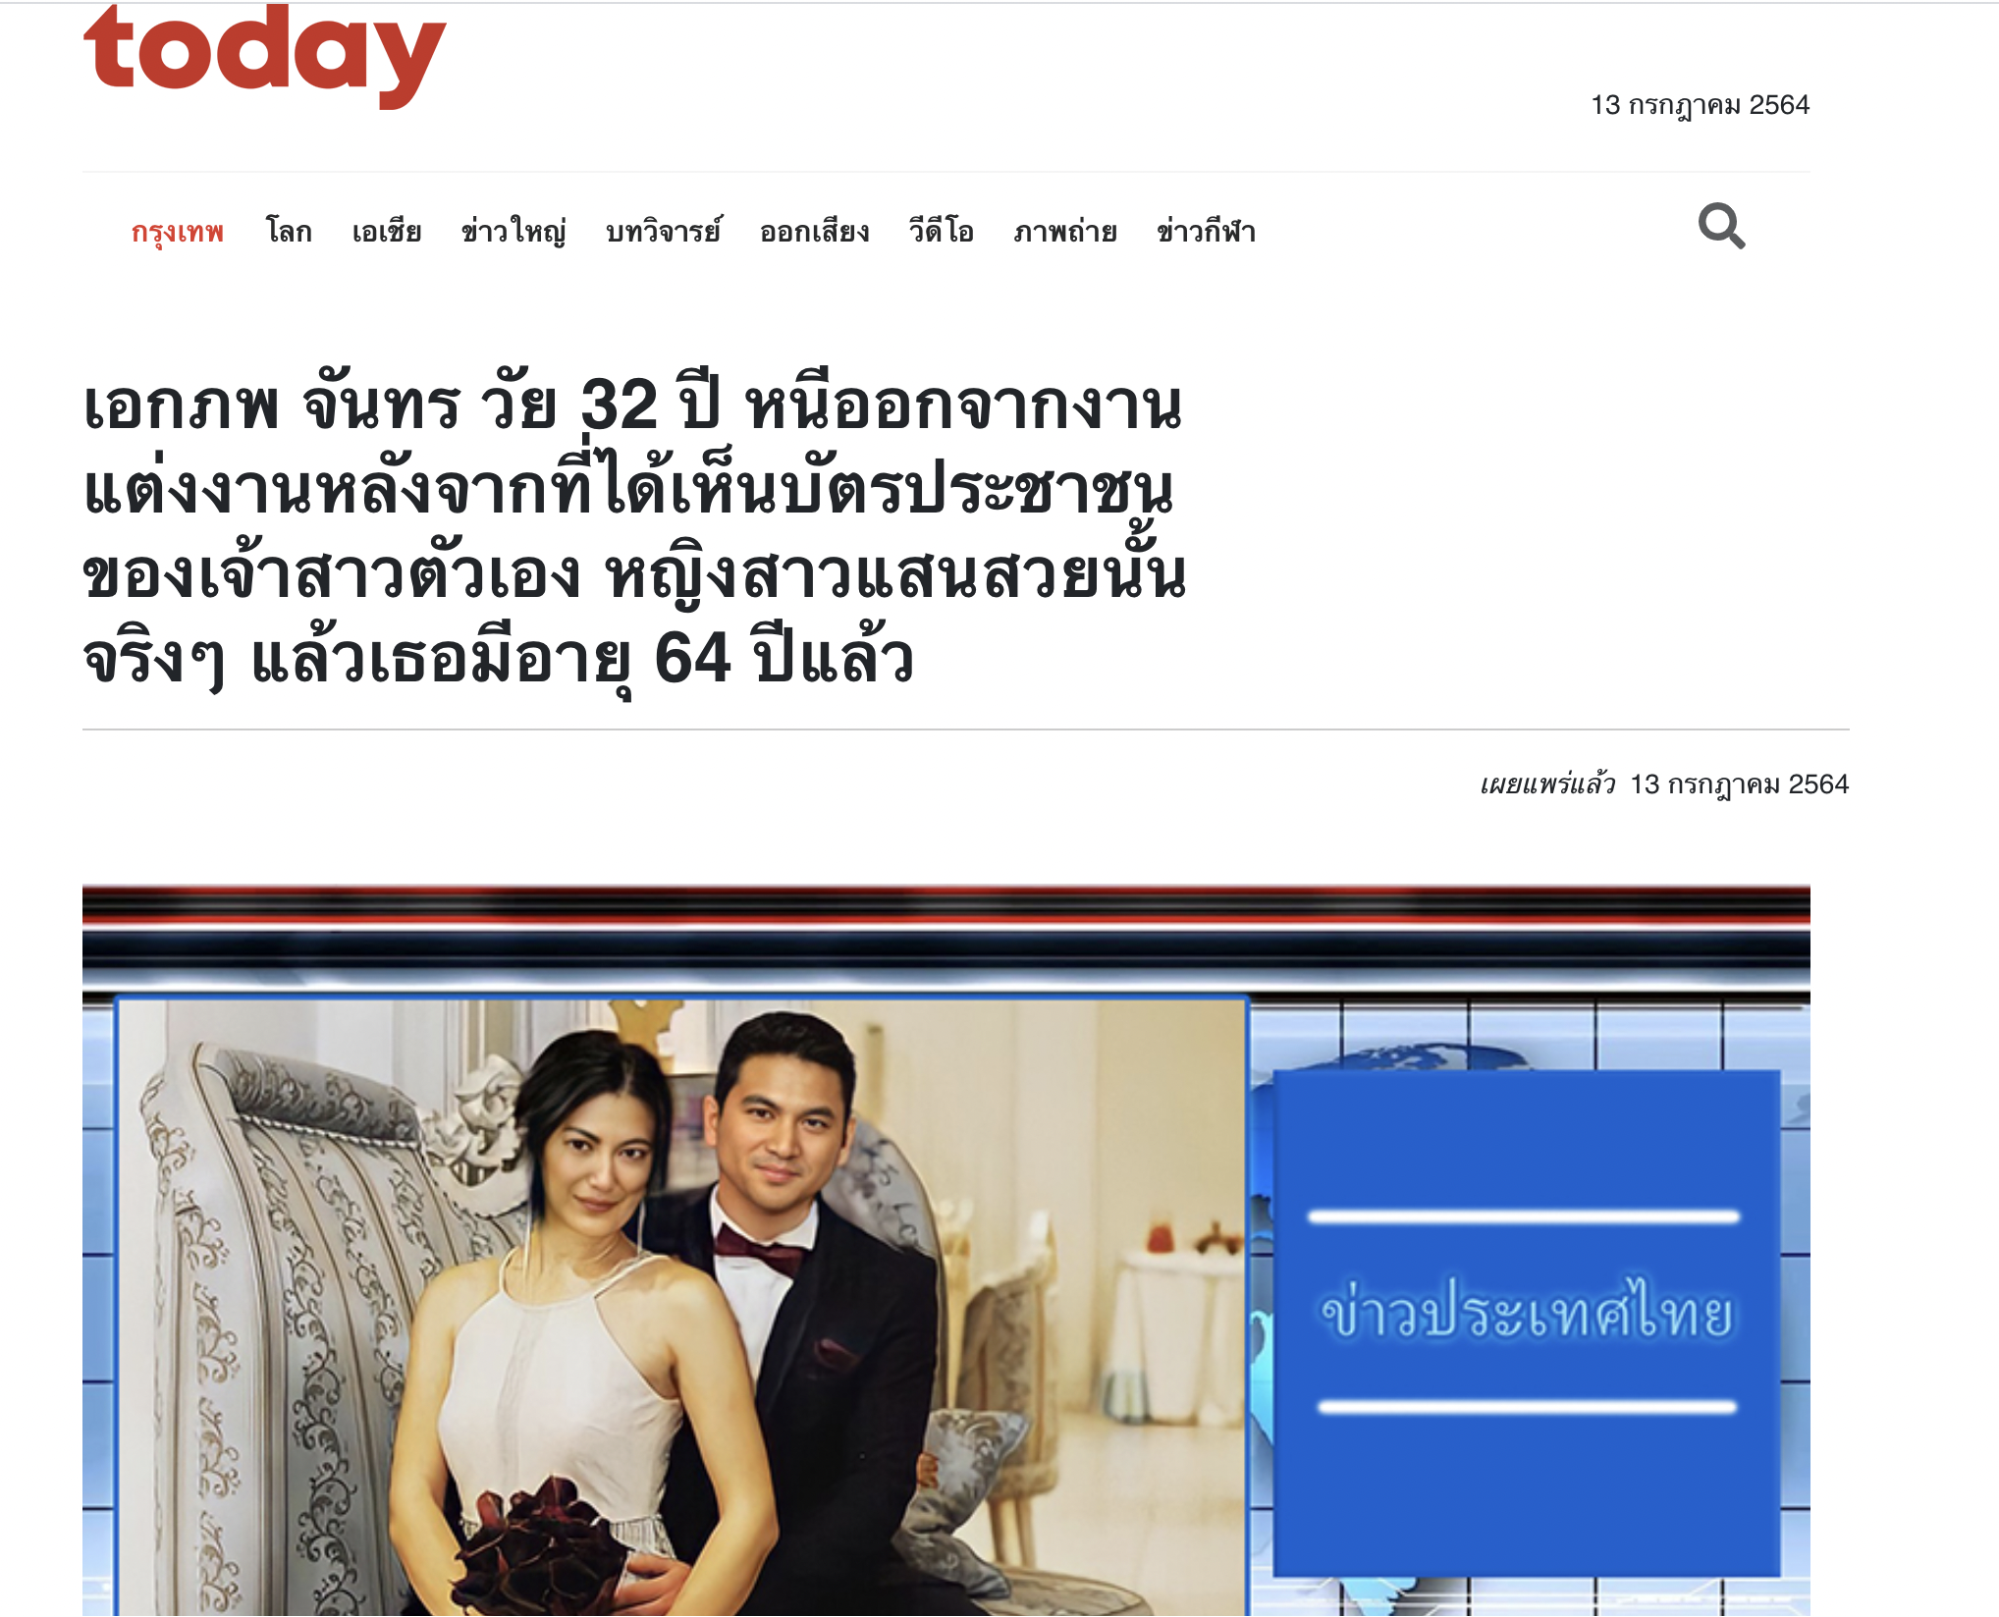 Кейс: нутра с тизерной сети на Таиланд с ROI 52 %